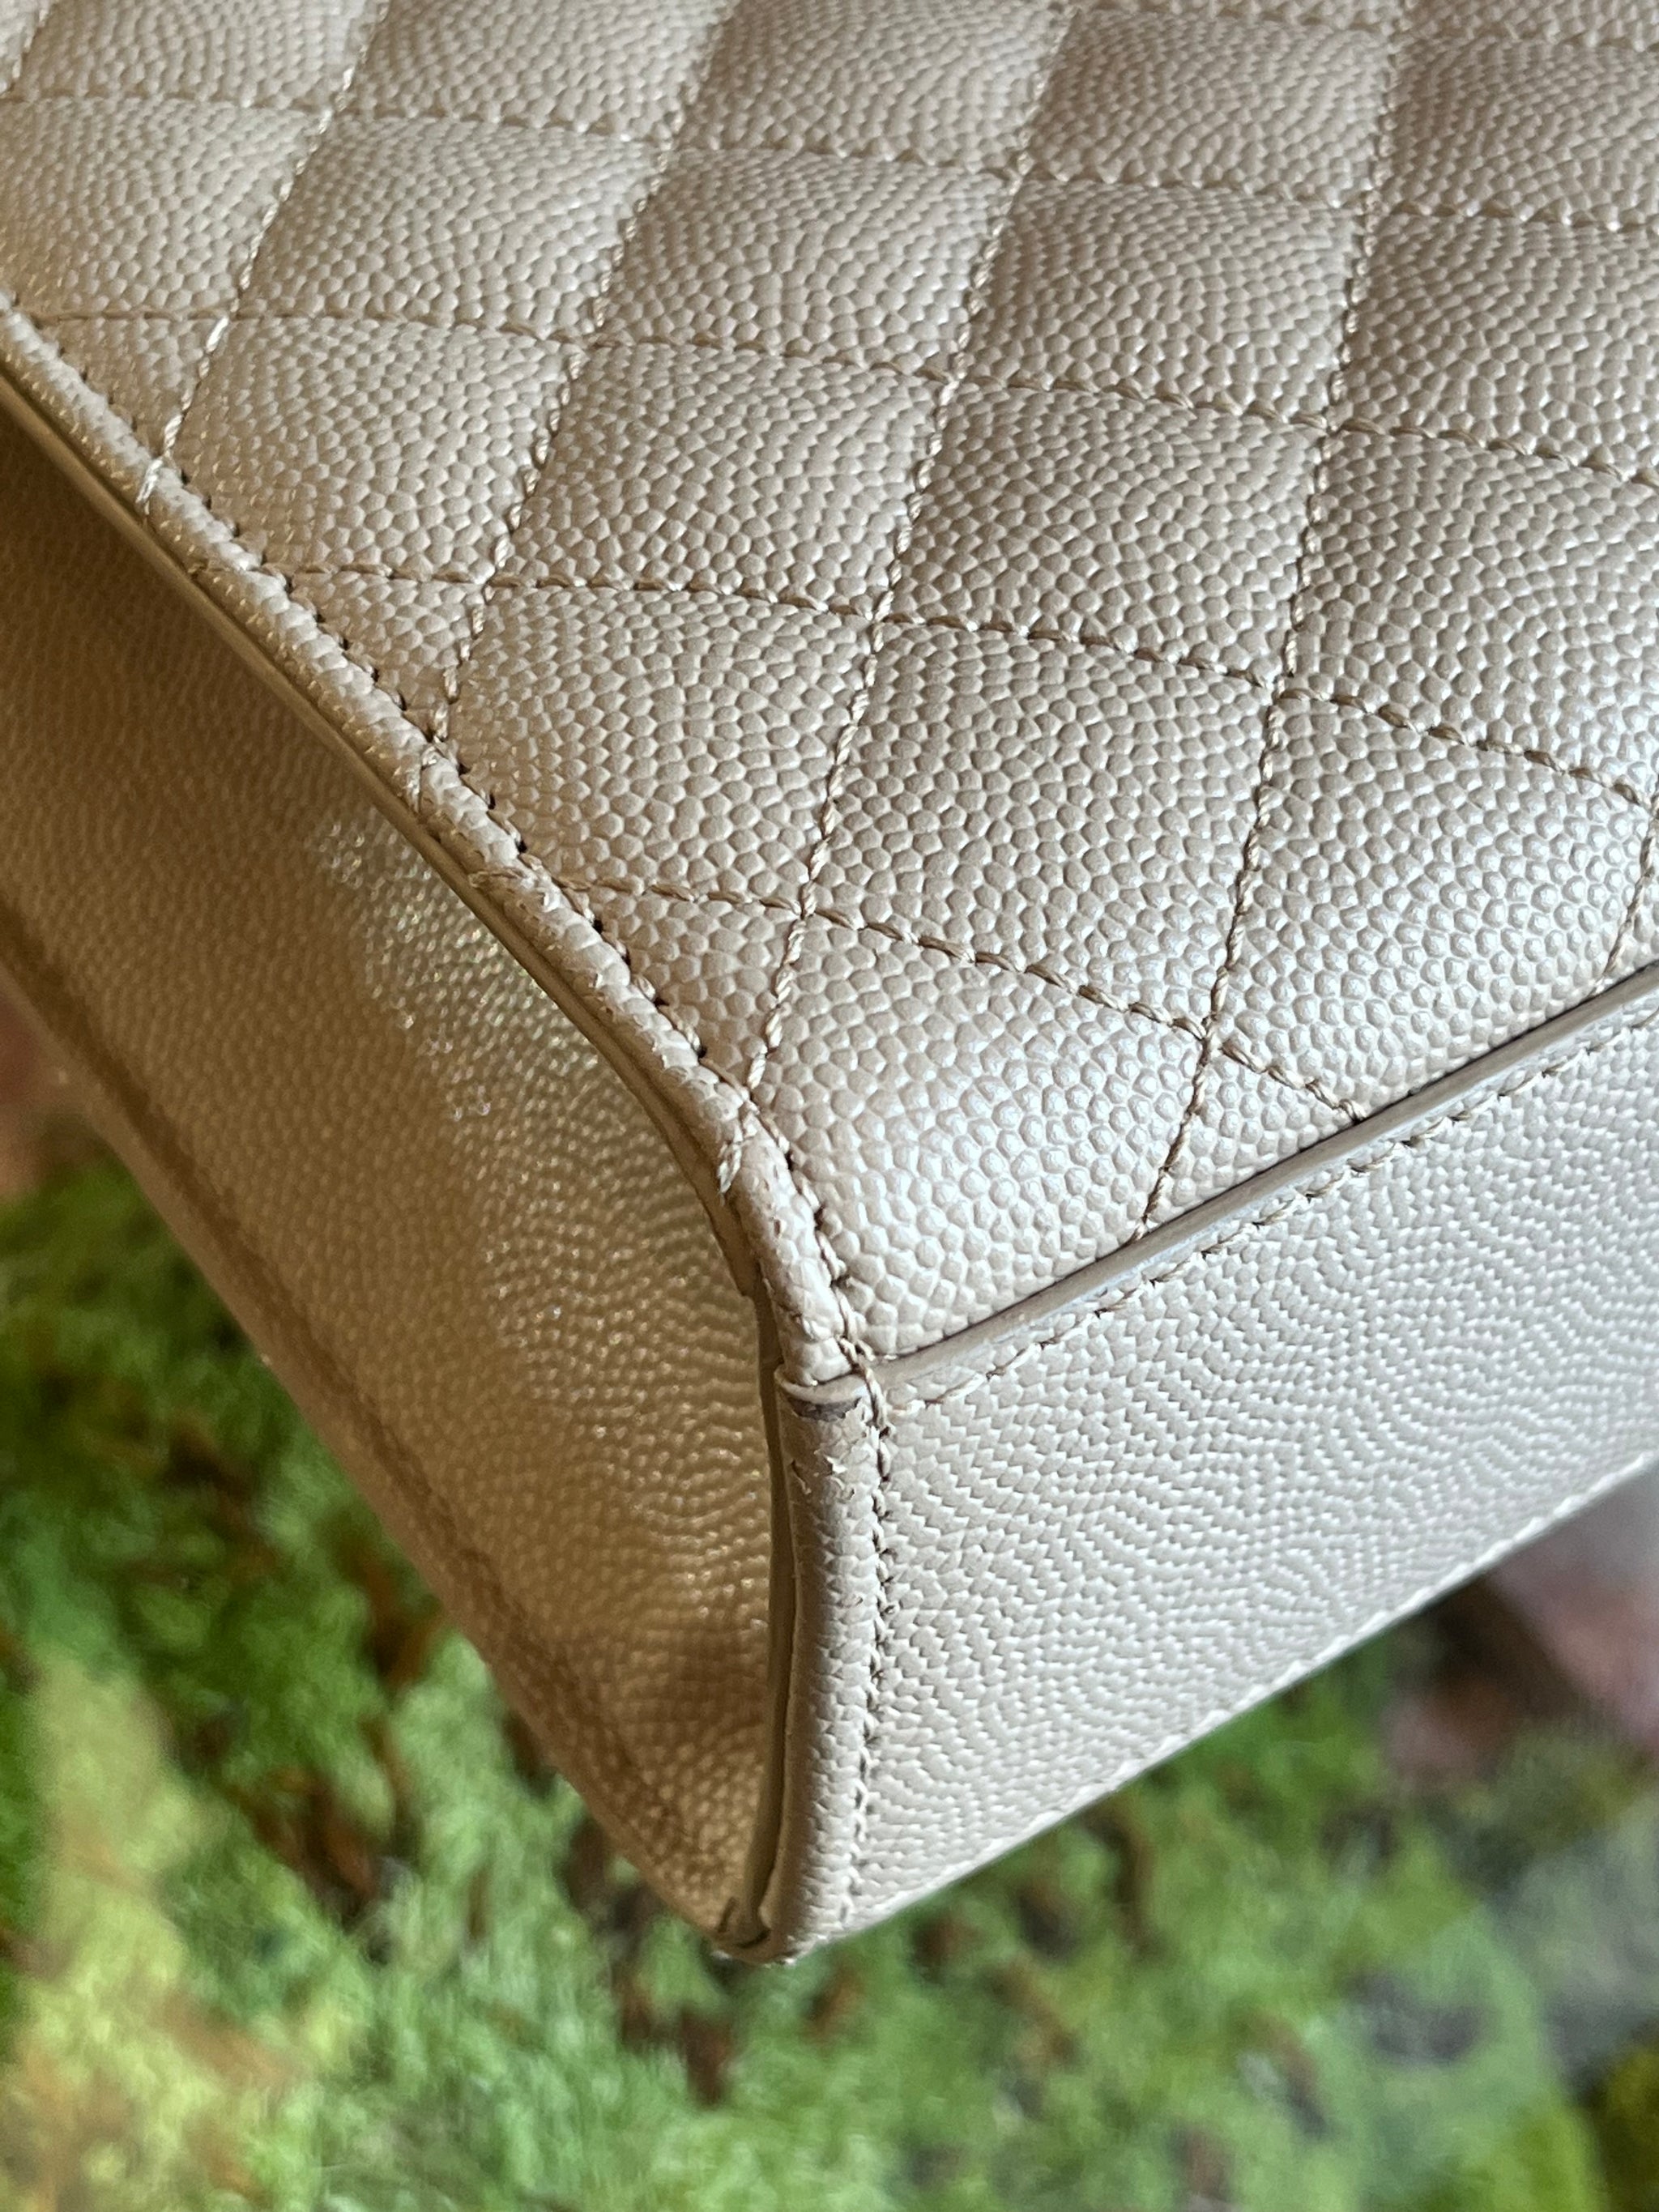 Saint Laurent Large Envelope Calfskin Leather Shoulder Bag